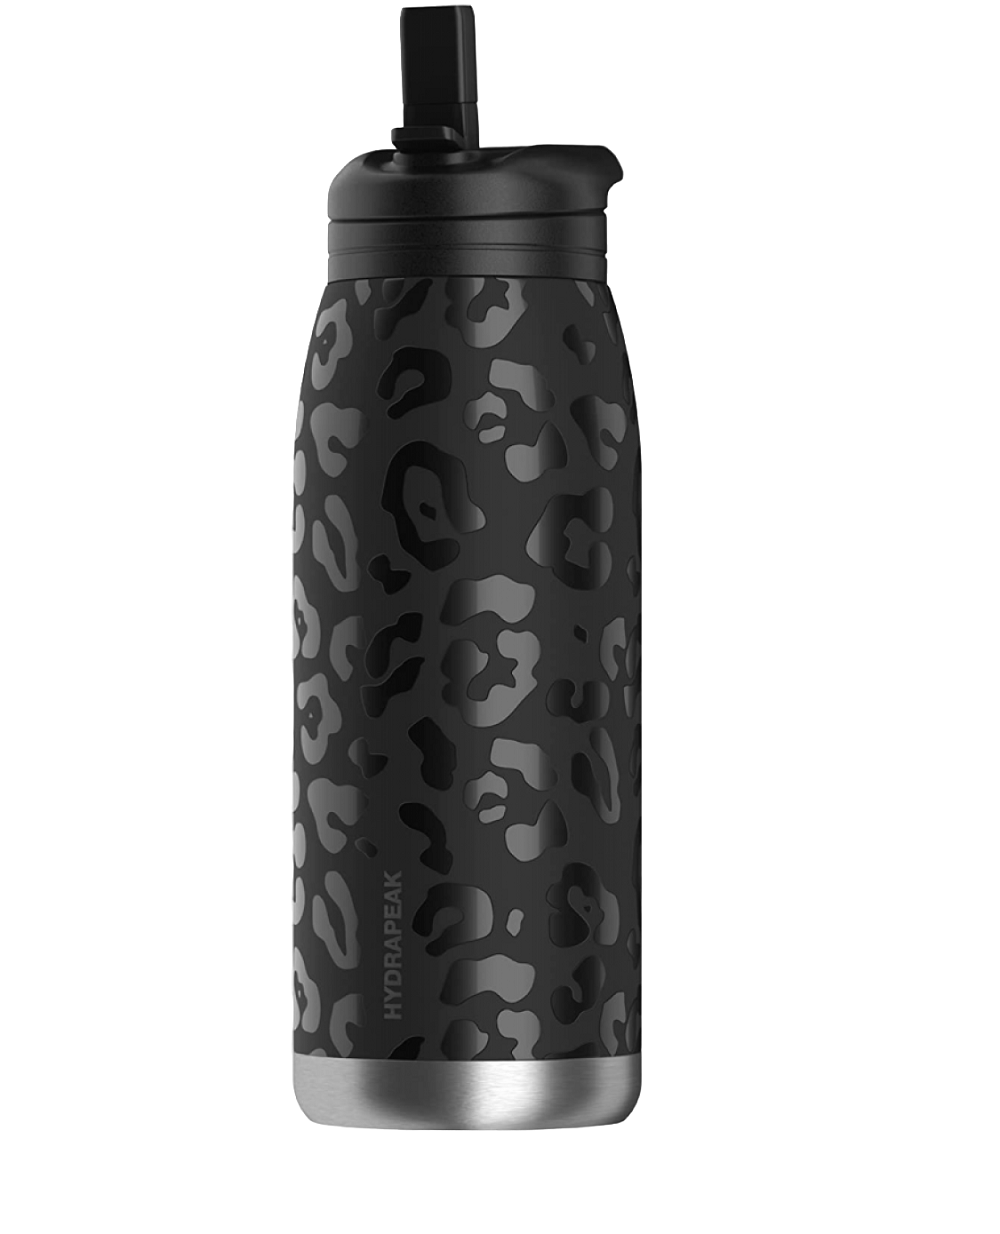 HYDRAPEAK Active 40oz Black Leopard Bottle with 3 Lids